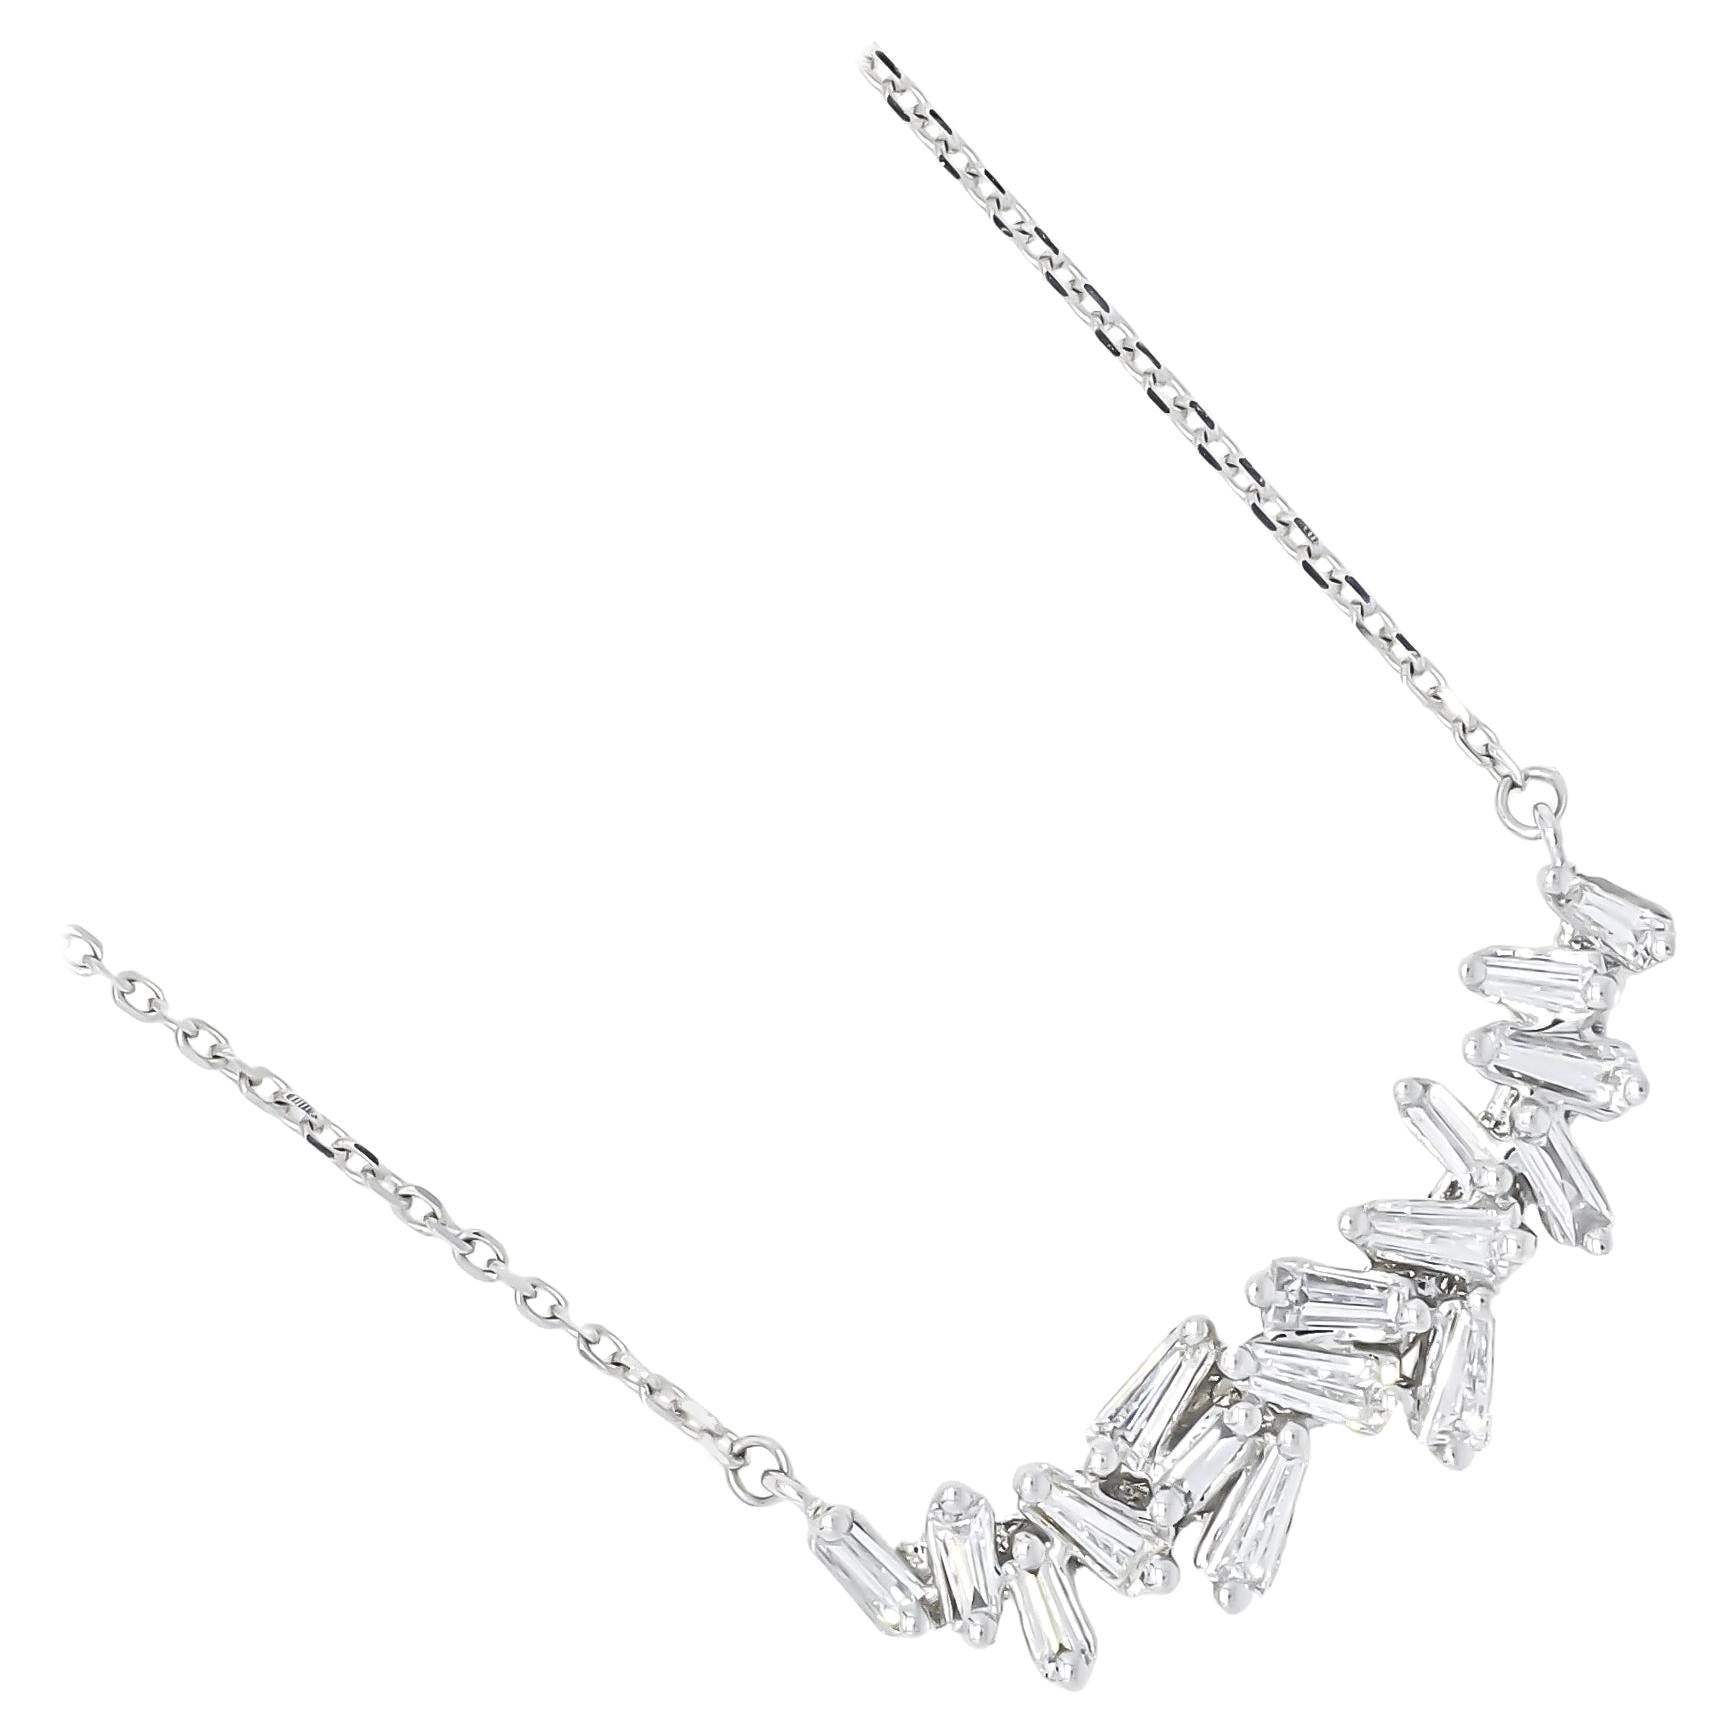 18KT White Gold Diamonds Baguette Diamond Cluster Bar Art Deco Pendant Necklace